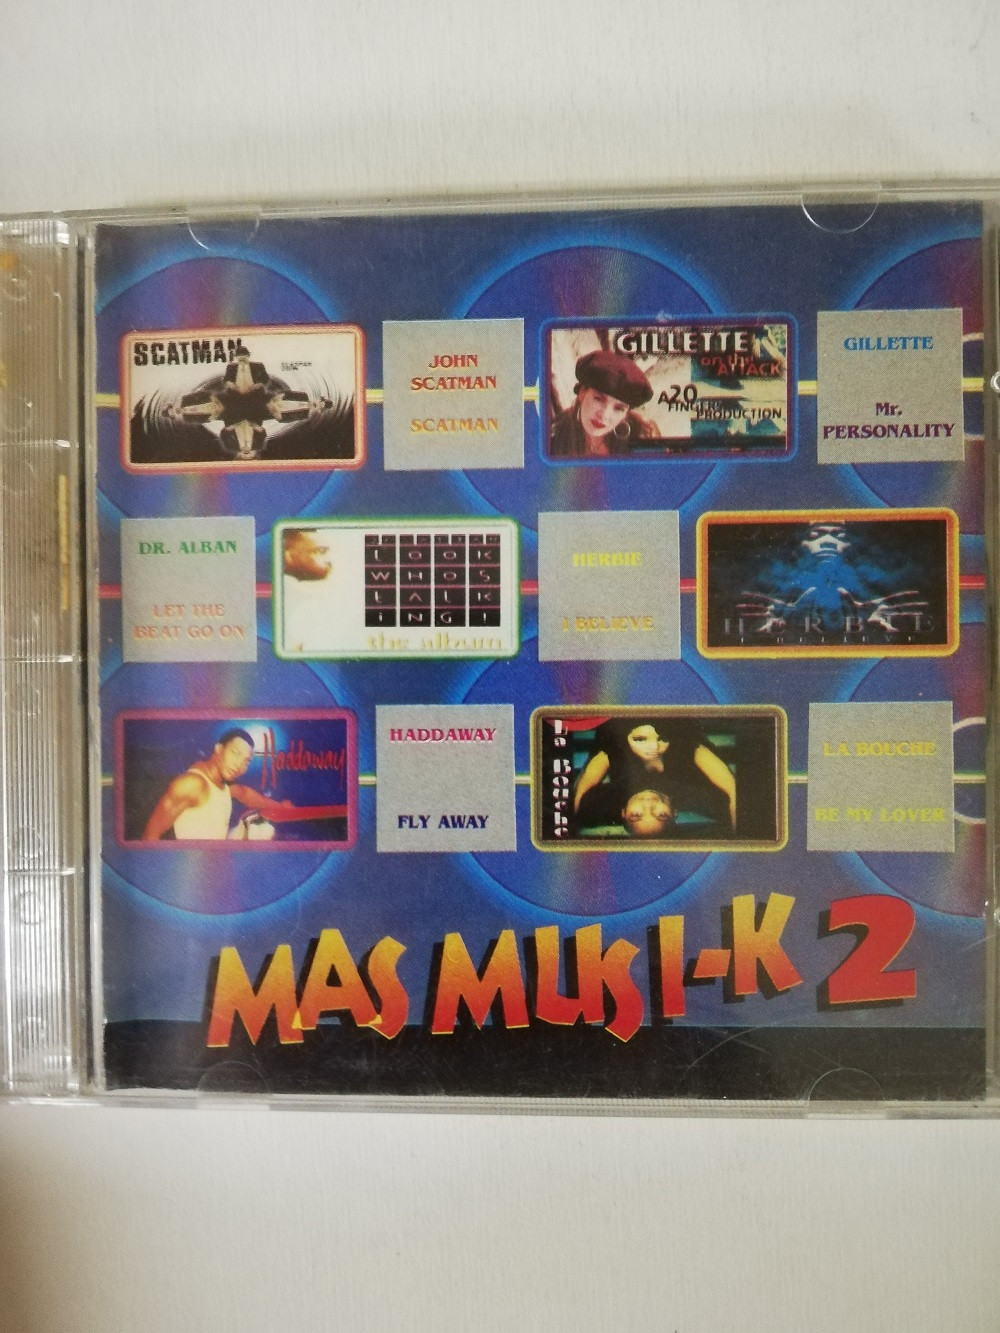 Imagen CD MAS MUSI-K - MAS MUSI-K 2